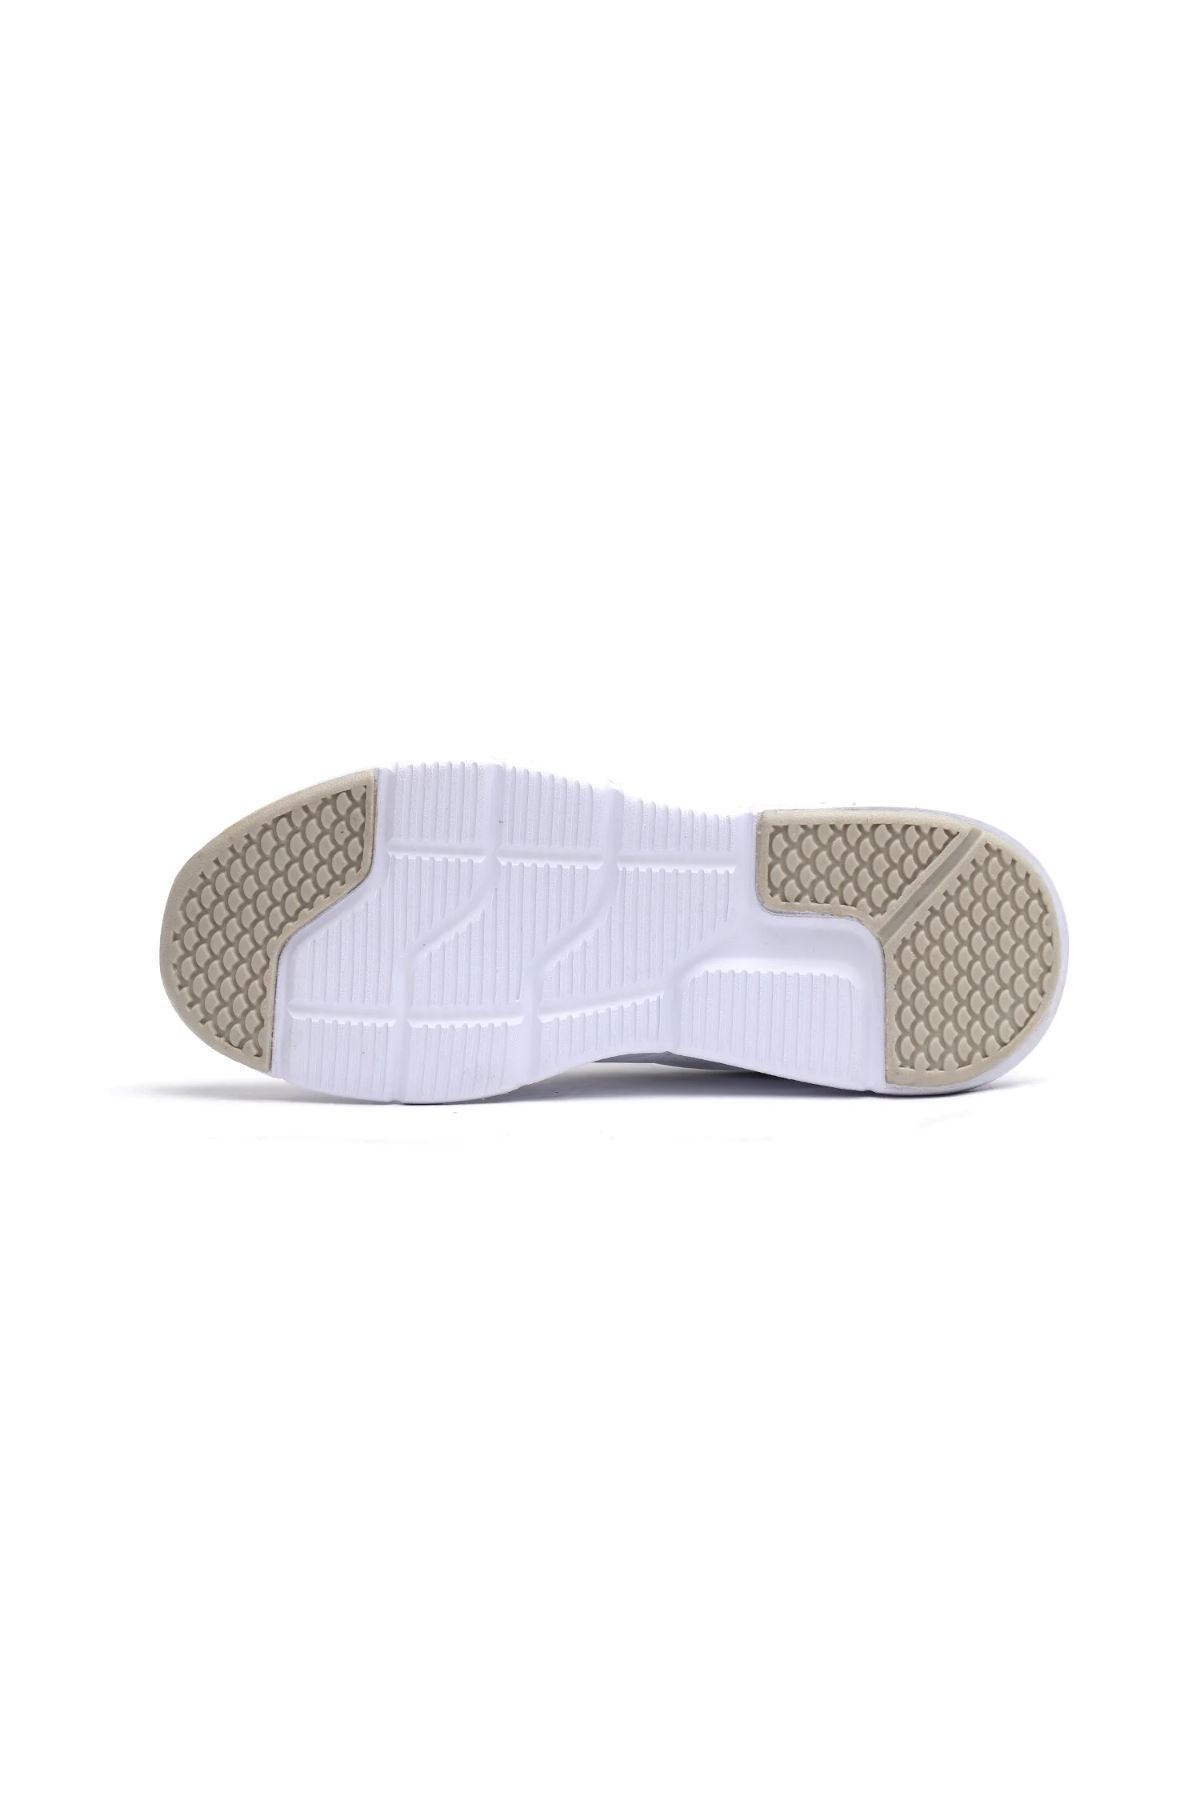 Erkek Beyaz Spor Ayakkabı - 900057-9001